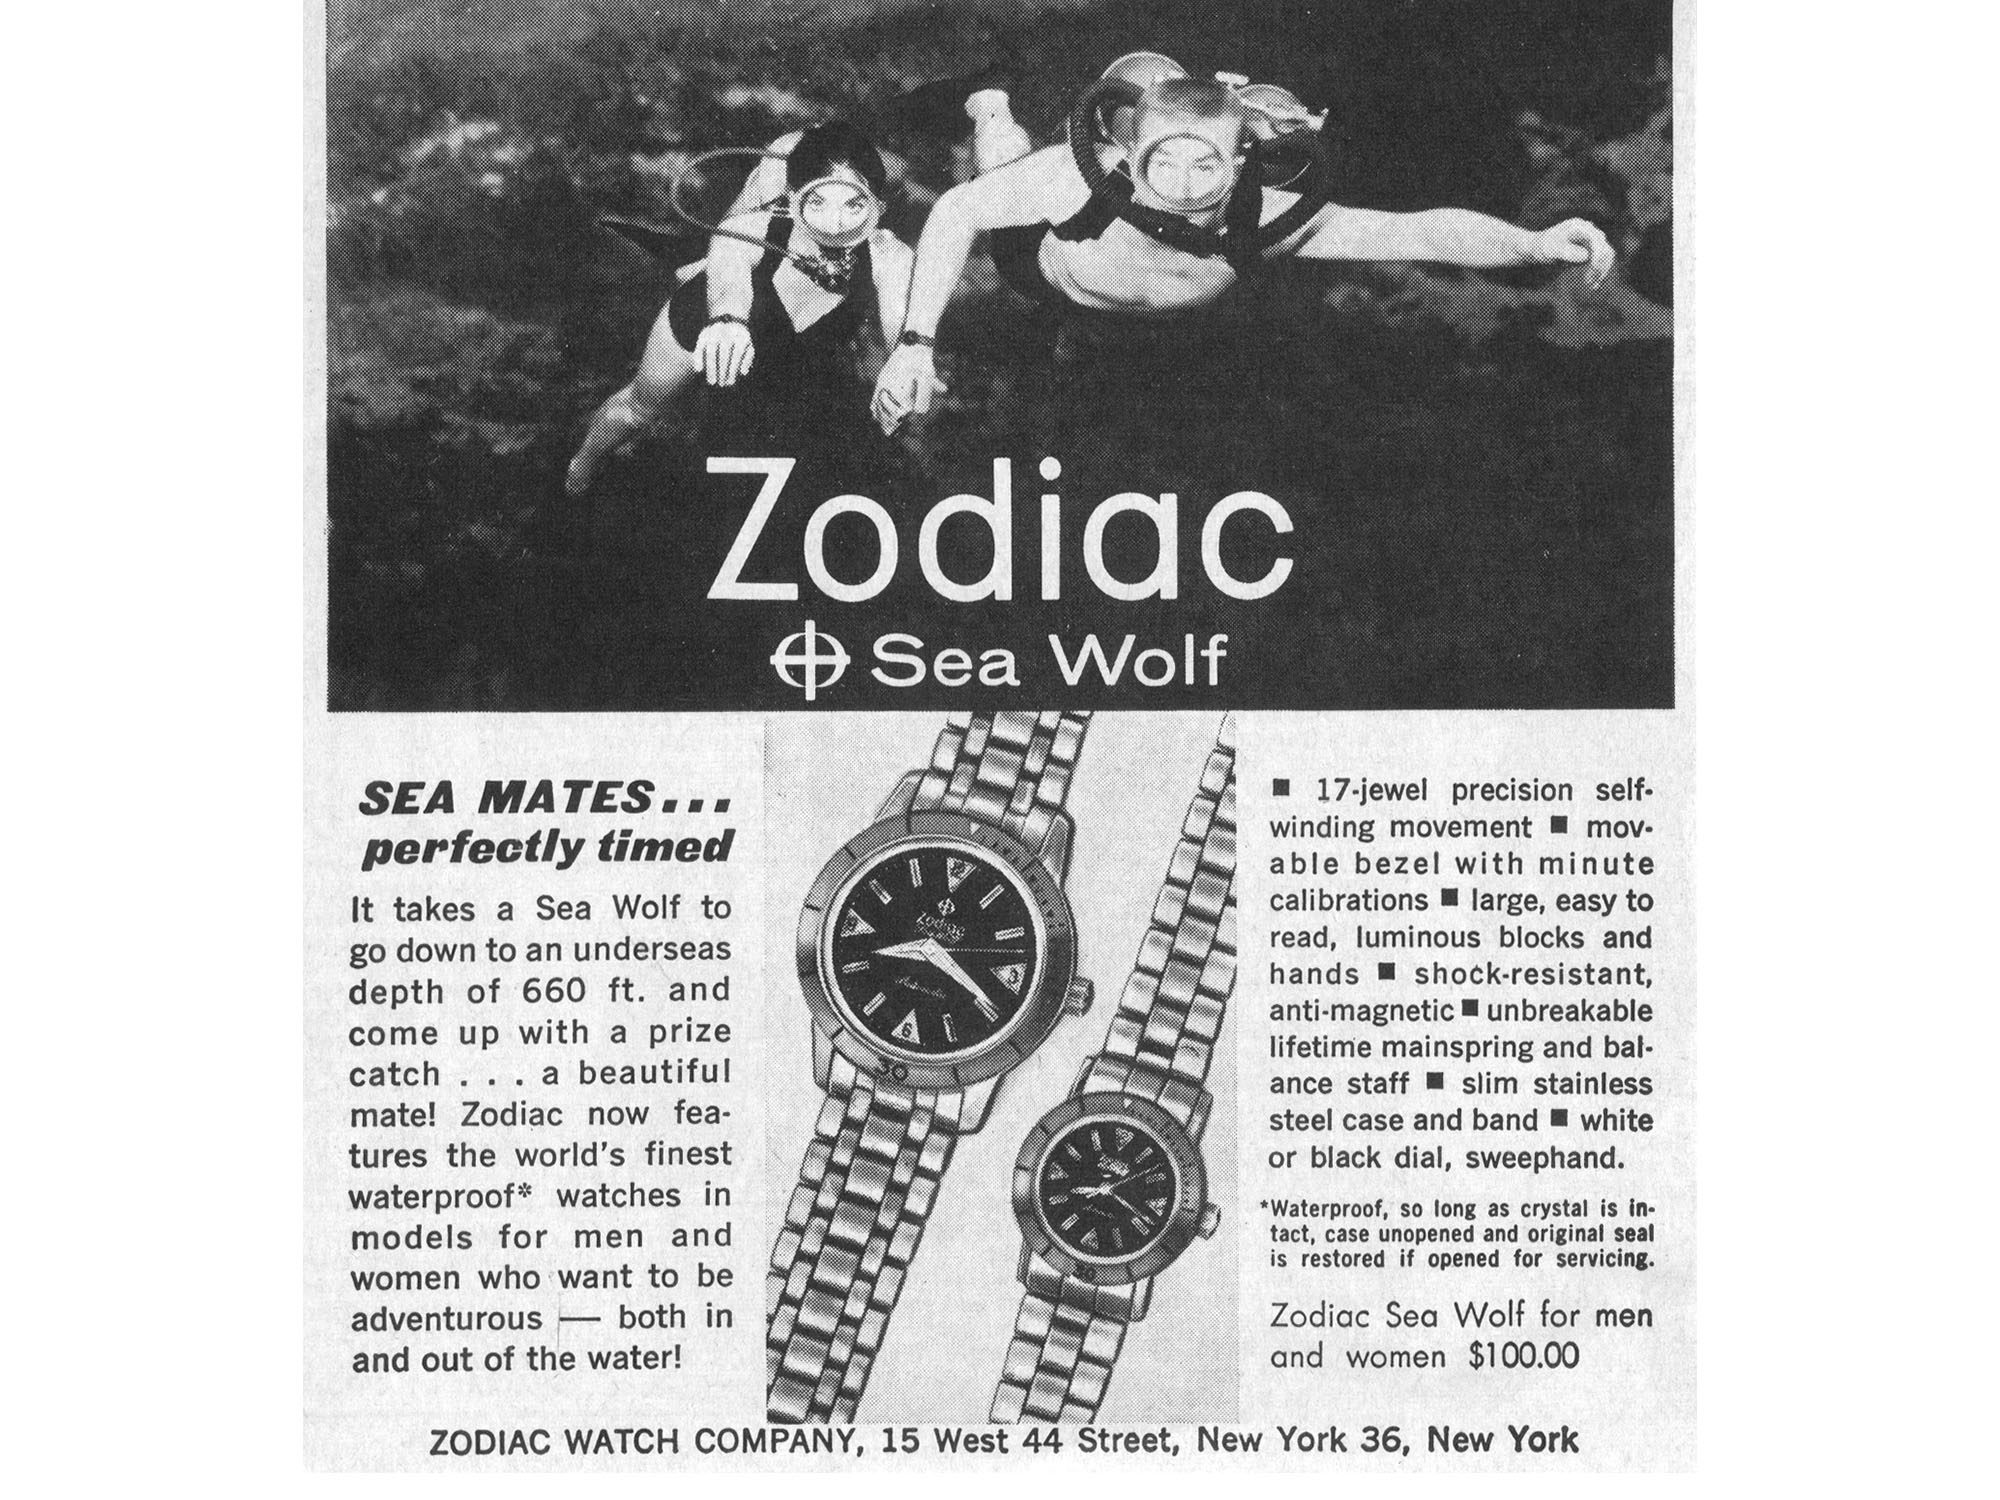 Zodiac Sea Wolf vintage ad